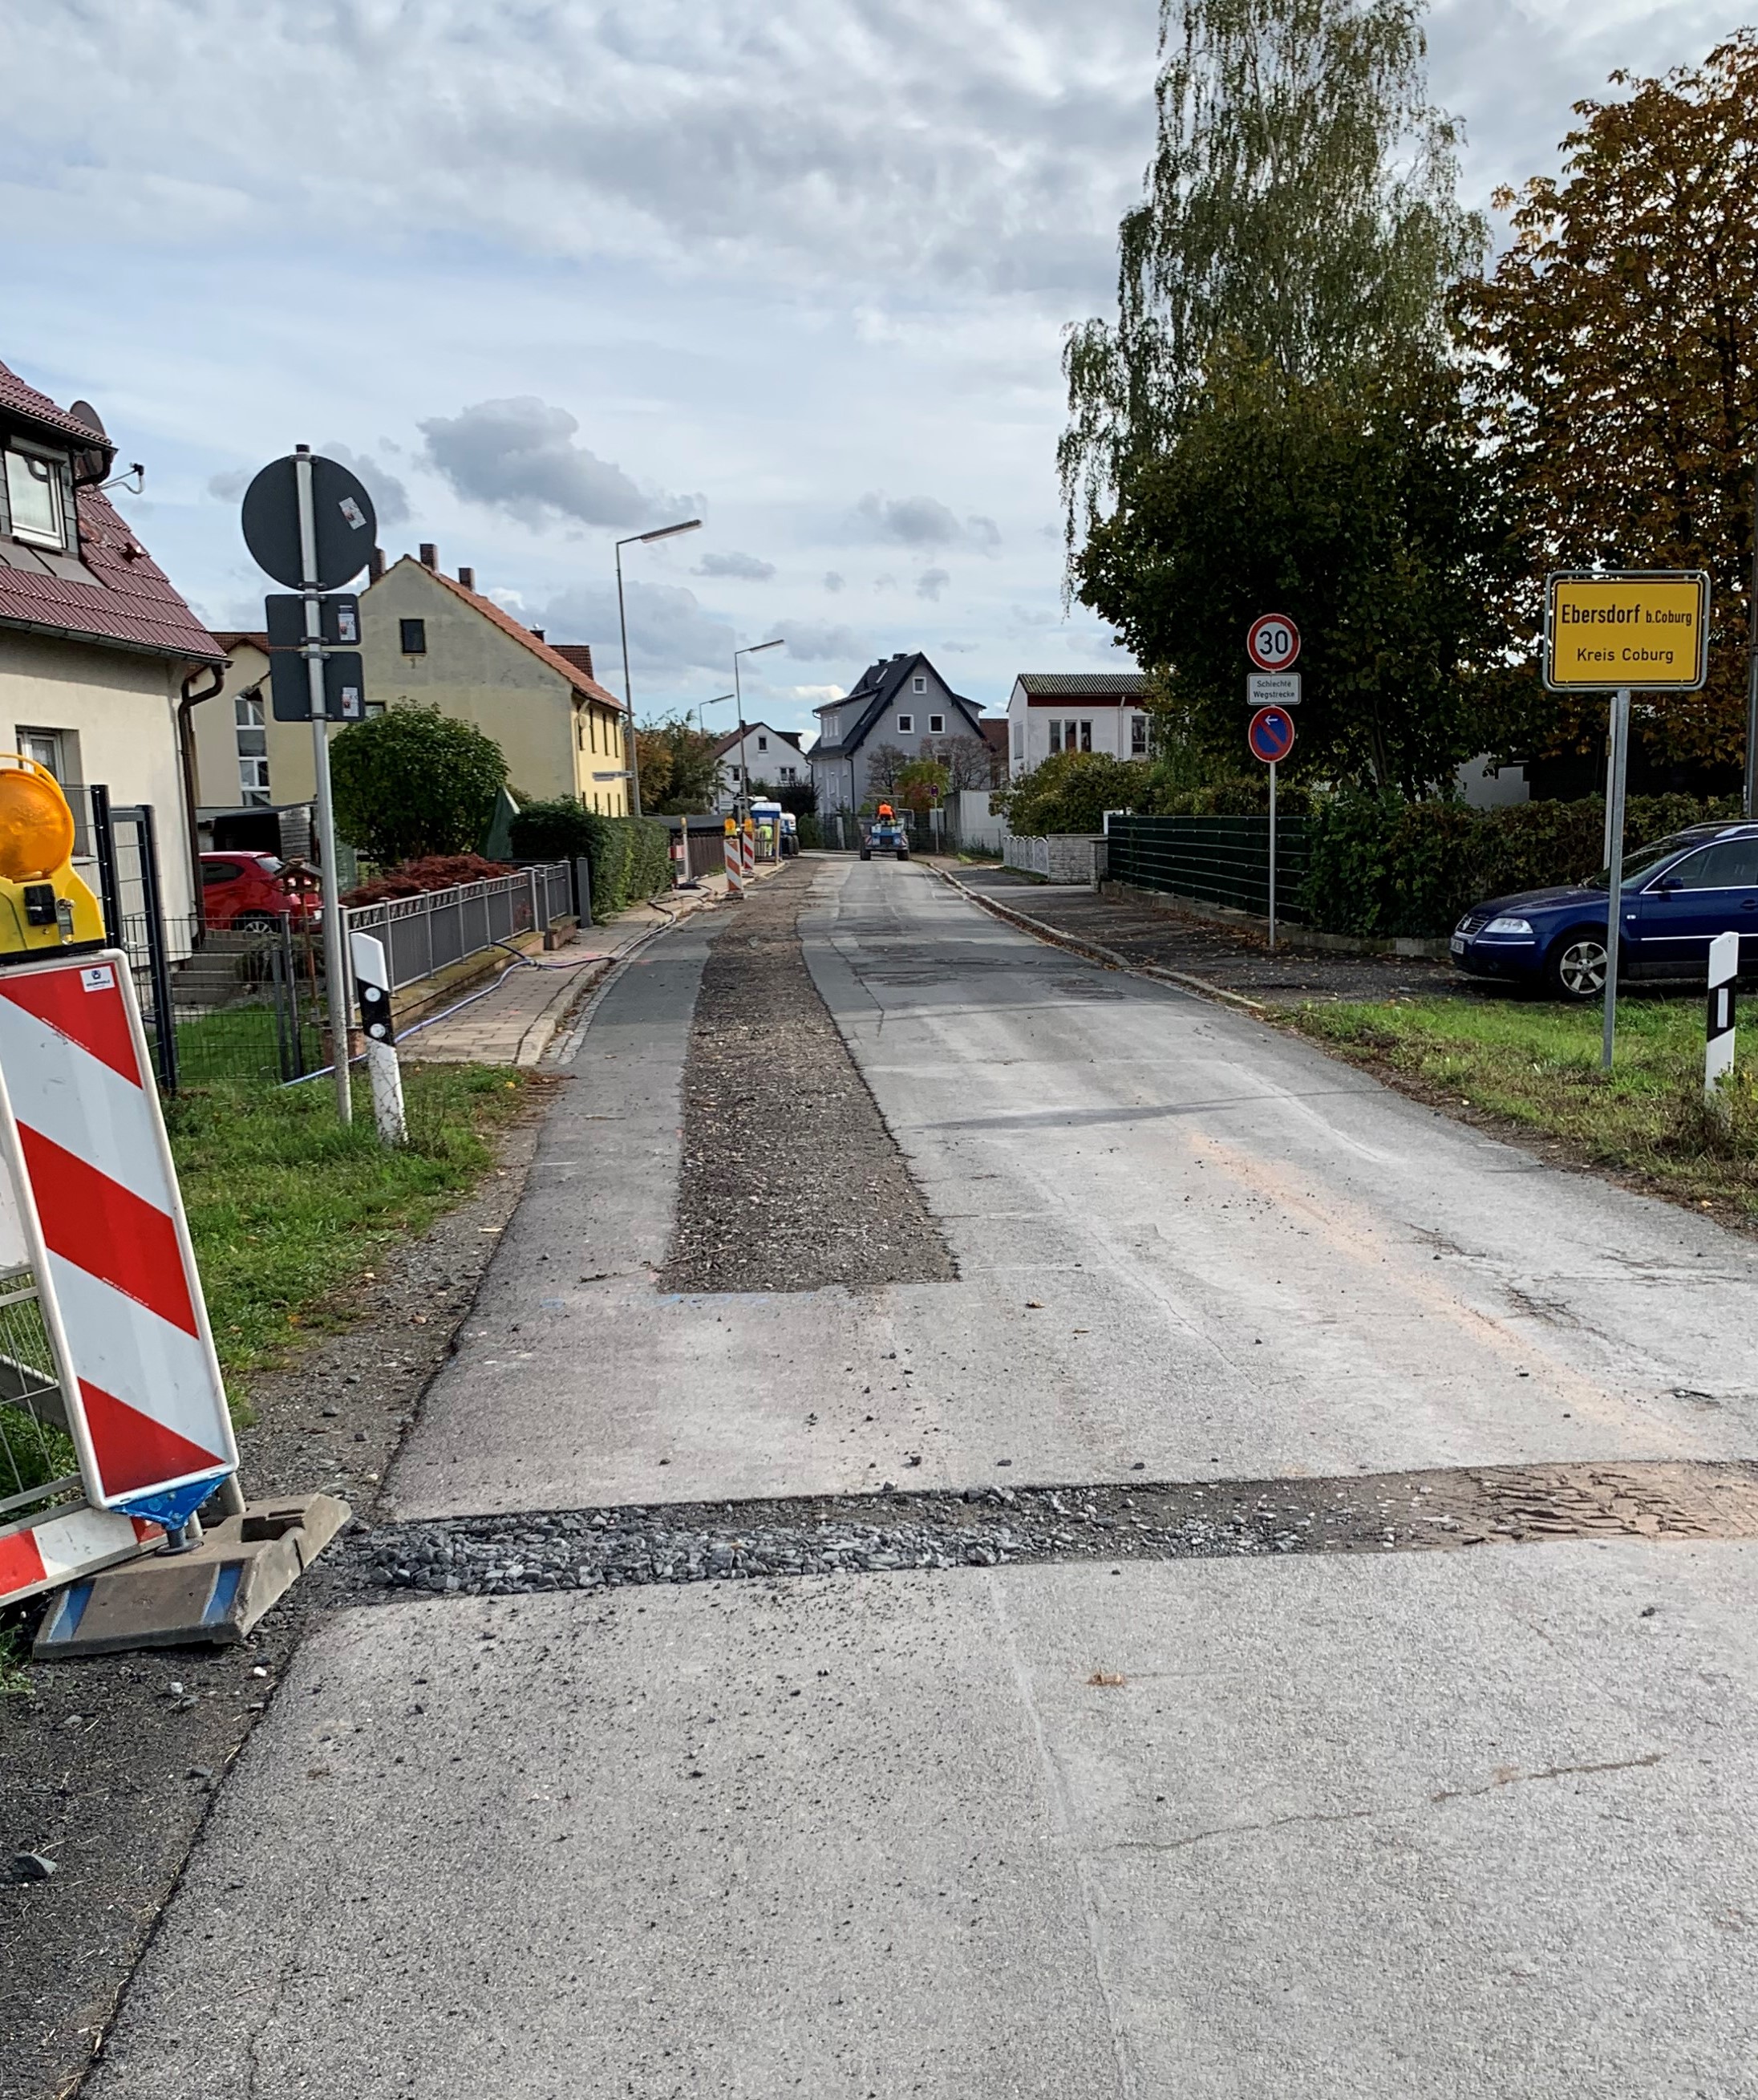 Bild der Zeickhorner Straße in Ebersdorf mit den Schäden im Bestand